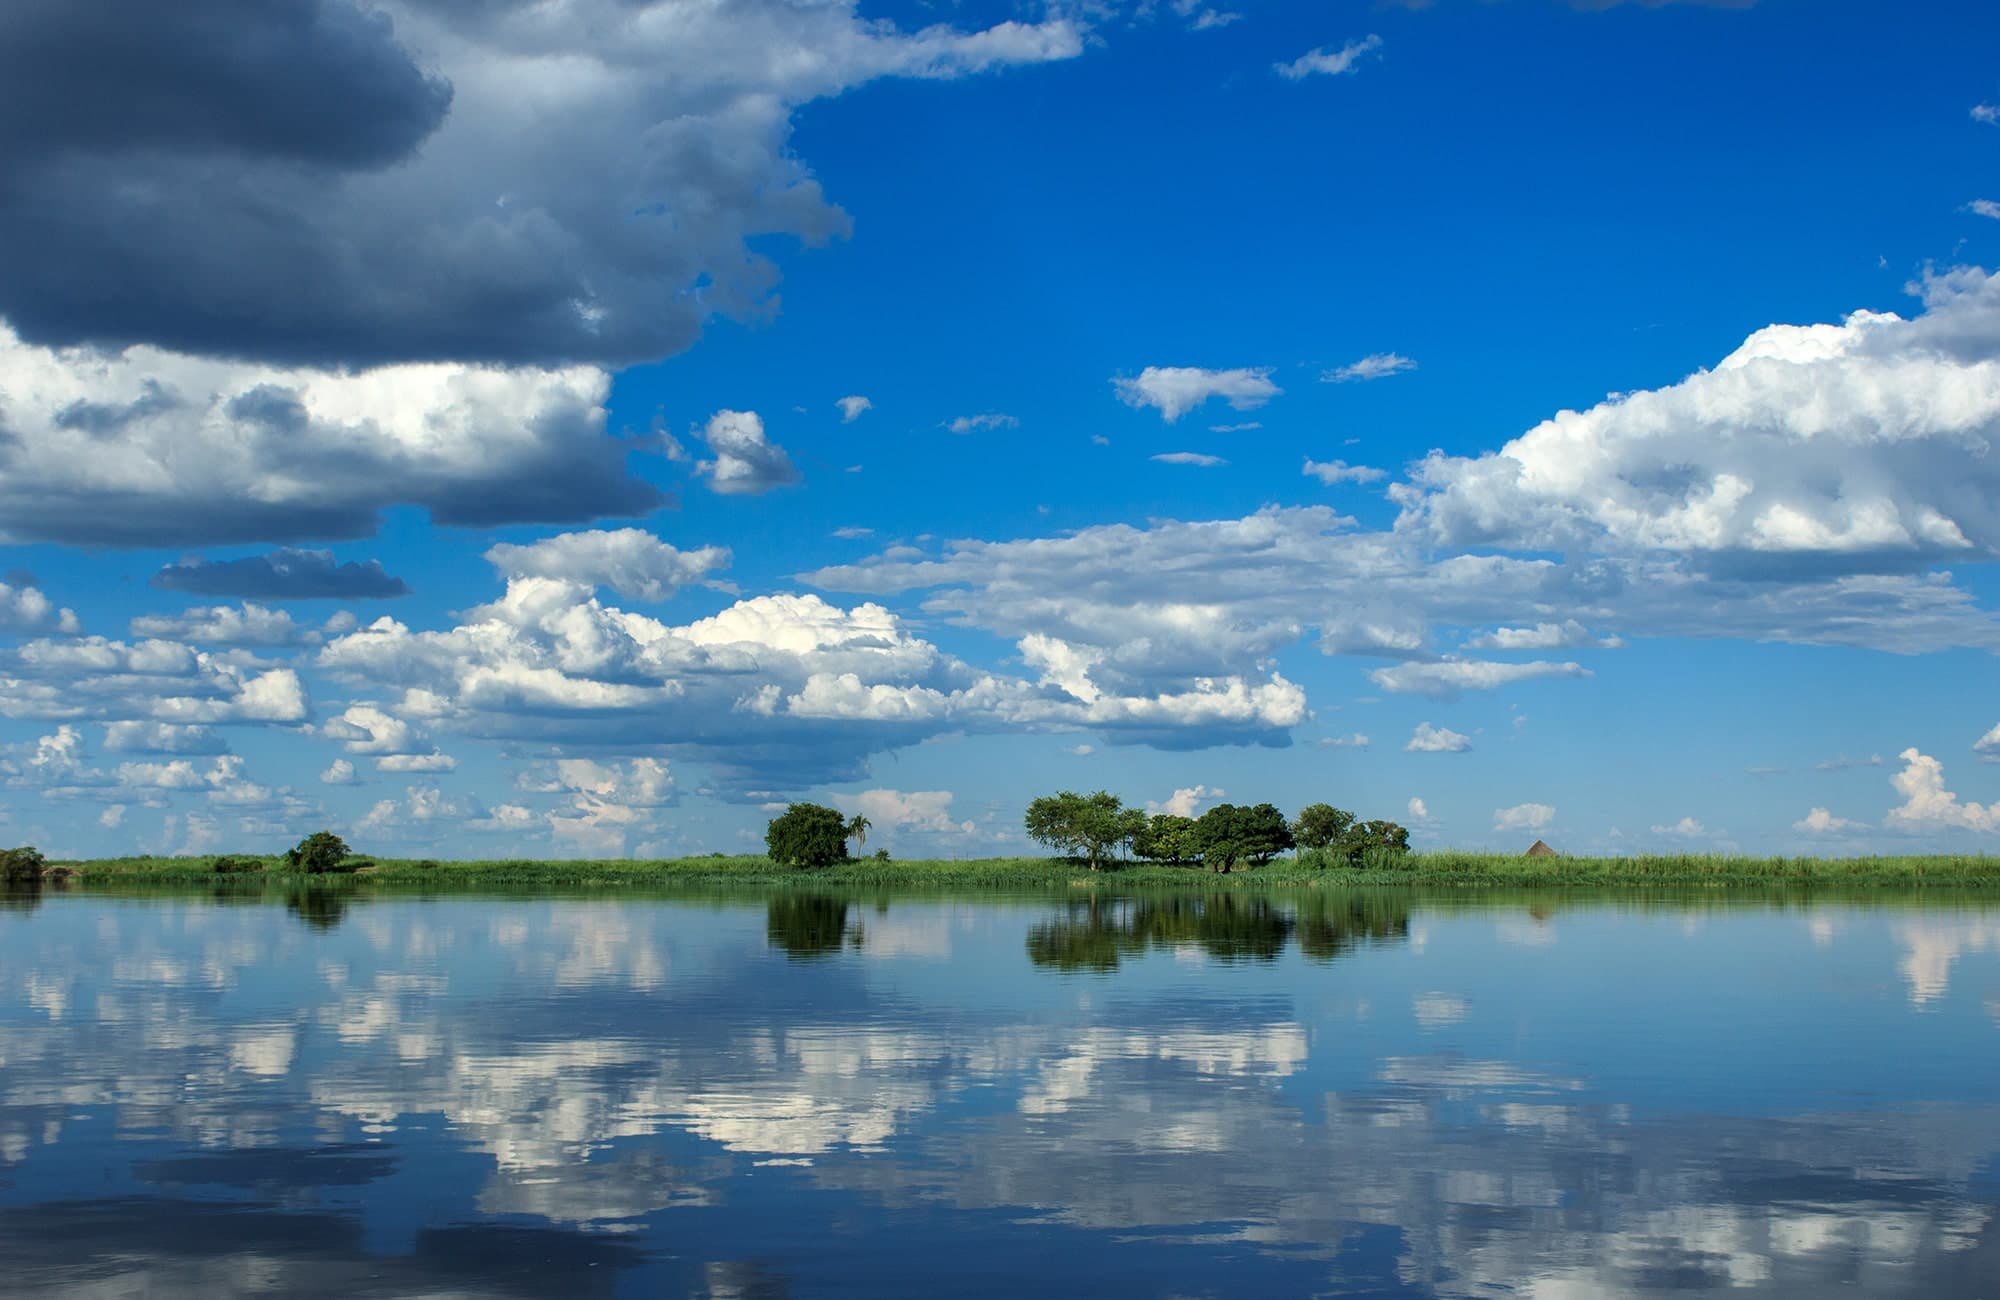 Zambezi River with cloud reflection